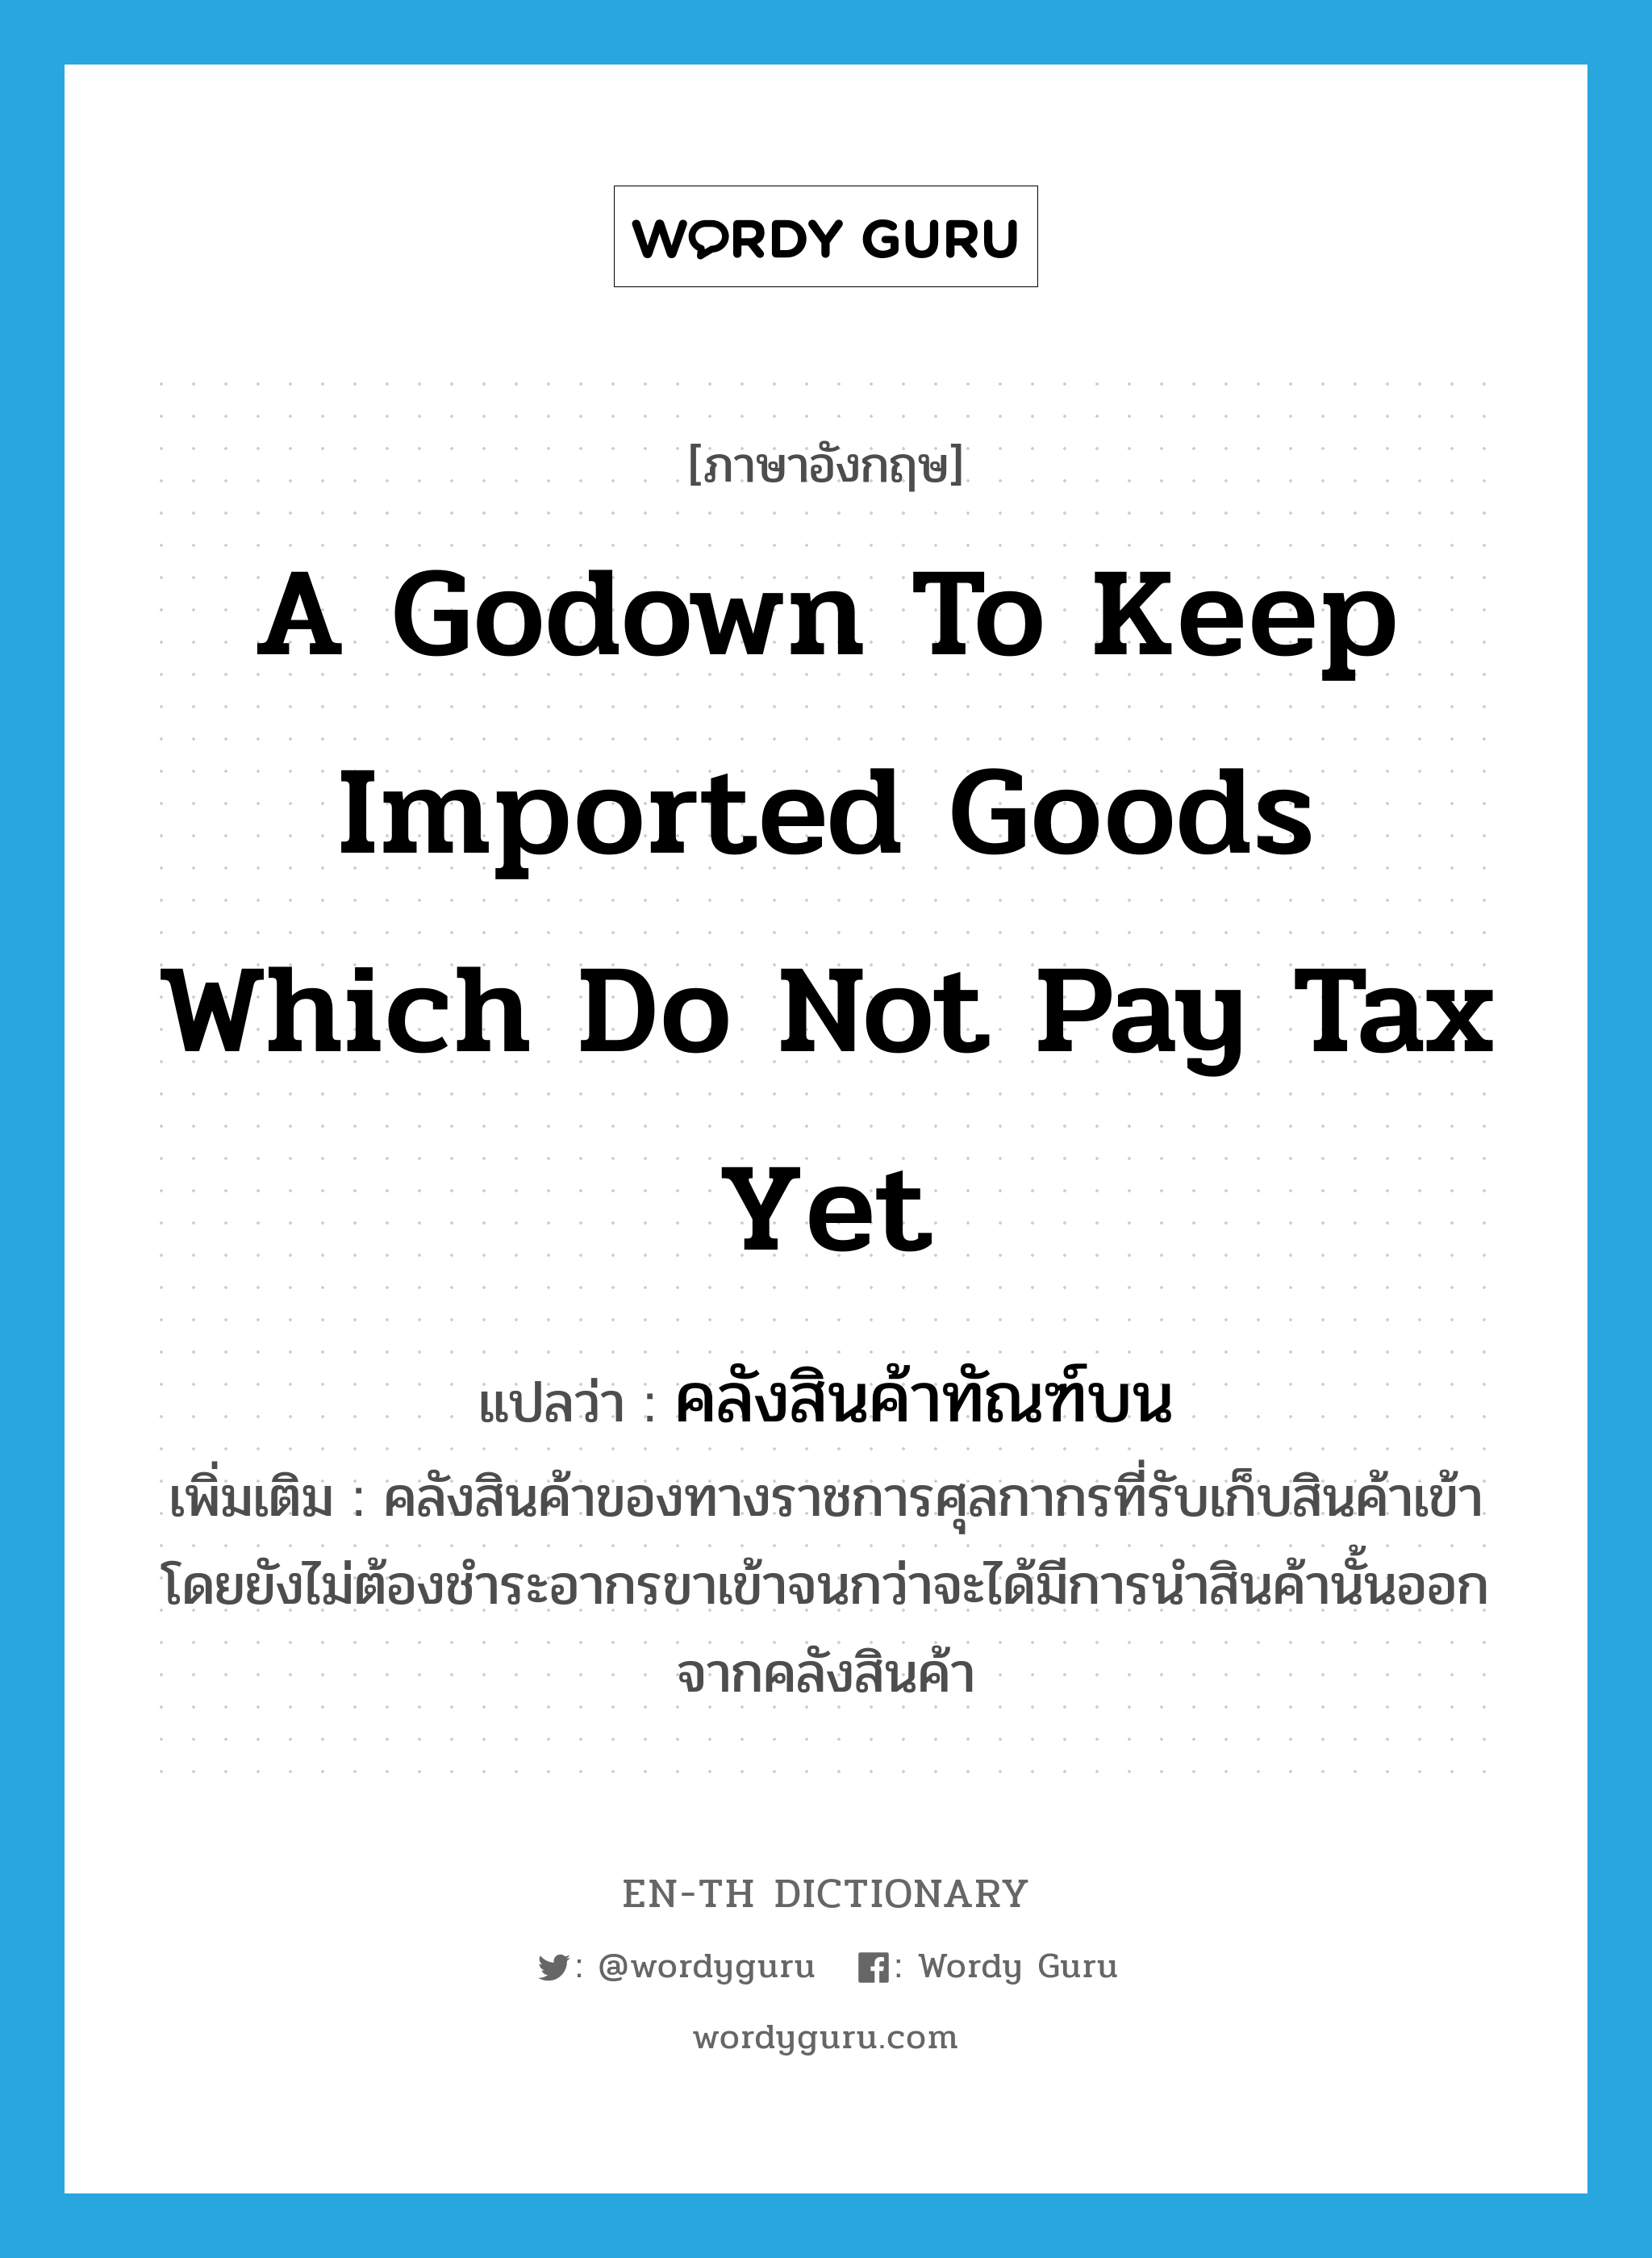 คลังสินค้าทัณฑ์บน ภาษาอังกฤษ?, คำศัพท์ภาษาอังกฤษ คลังสินค้าทัณฑ์บน แปลว่า a godown to keep imported goods which do not pay tax yet ประเภท N เพิ่มเติม คลังสินค้าของทางราชการศุลกากรที่รับเก็บสินค้าเข้า โดยยังไม่ต้องชำระอากรขาเข้าจนกว่าจะได้มีการนำสินค้านั้นออกจากคลังสินค้า หมวด N